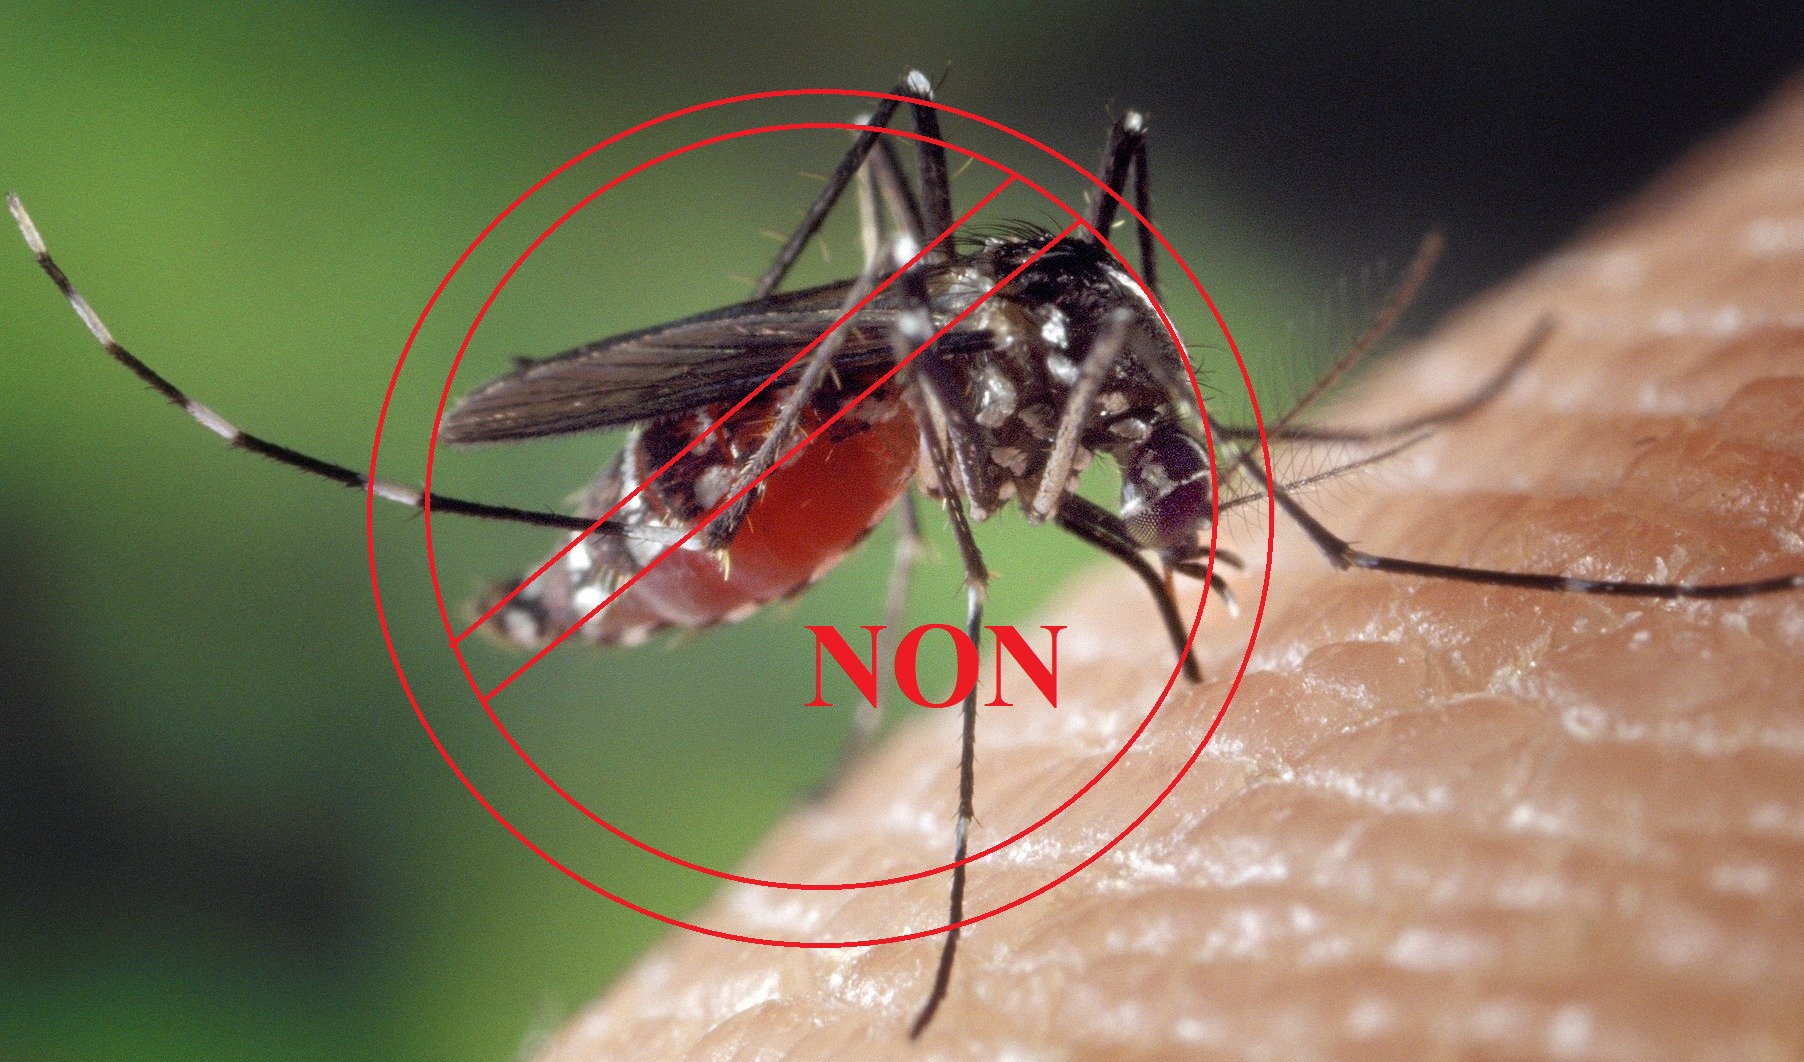 Aimant pour moustiquaire: La solution intelligente contre les insectes